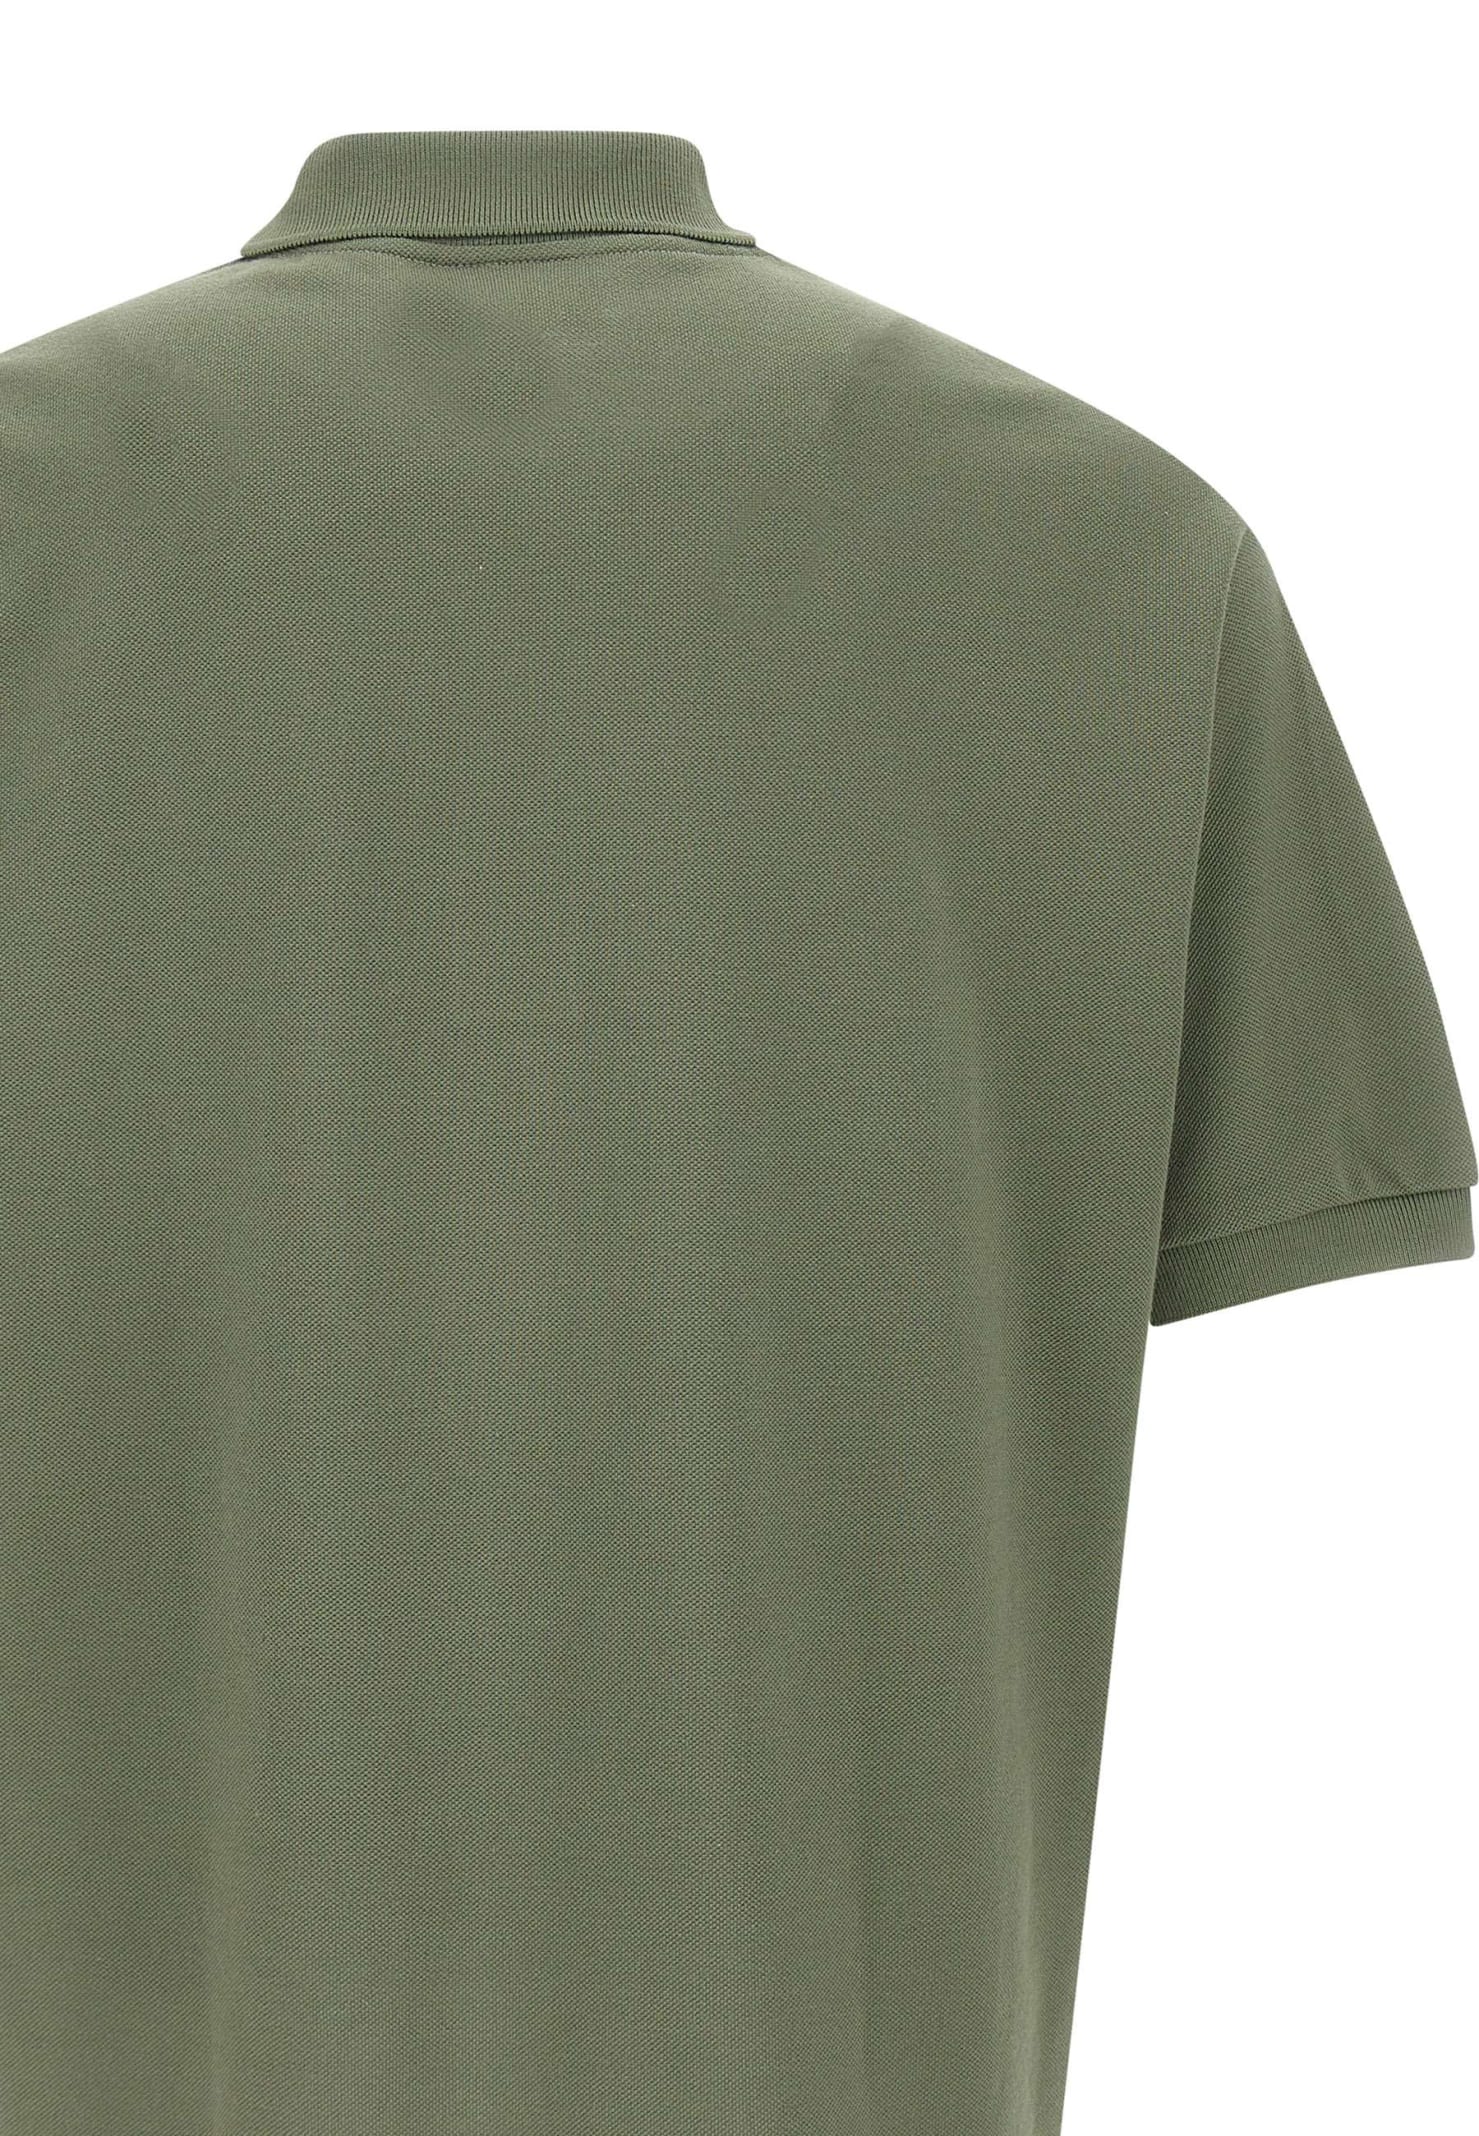 Shop Lacoste Piquet Cotton Polo Shirt In Green